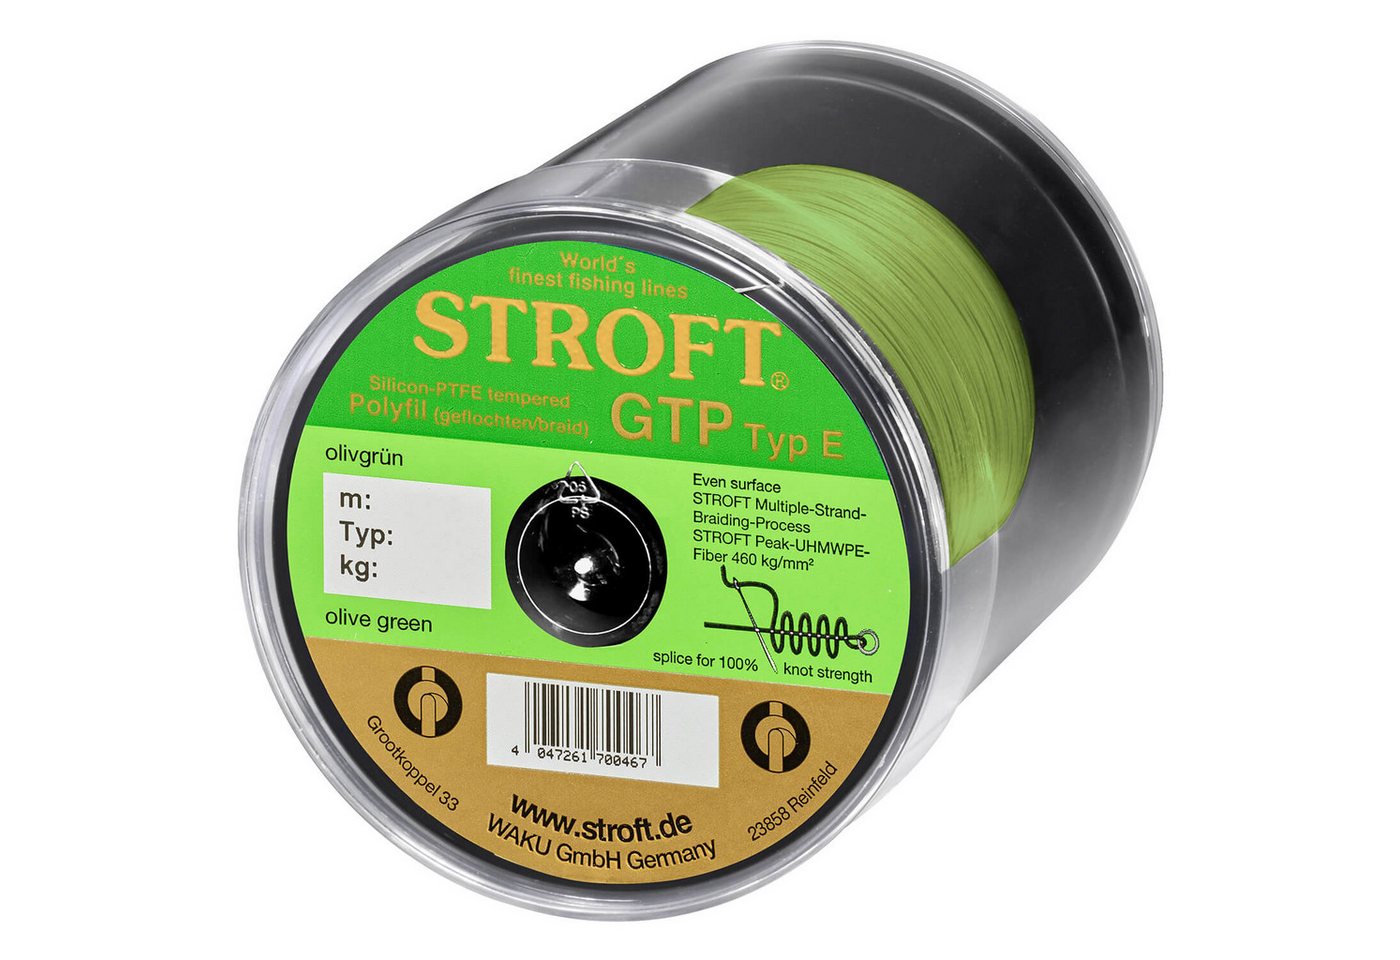 Stroft Angelschnur Stroft Schnur GTP Typ E geflochten olivgrün 600m, 600 m Länge, 0.28 mm Fadendurchmesser, (1-St), 15kg Tragkraft von Stroft